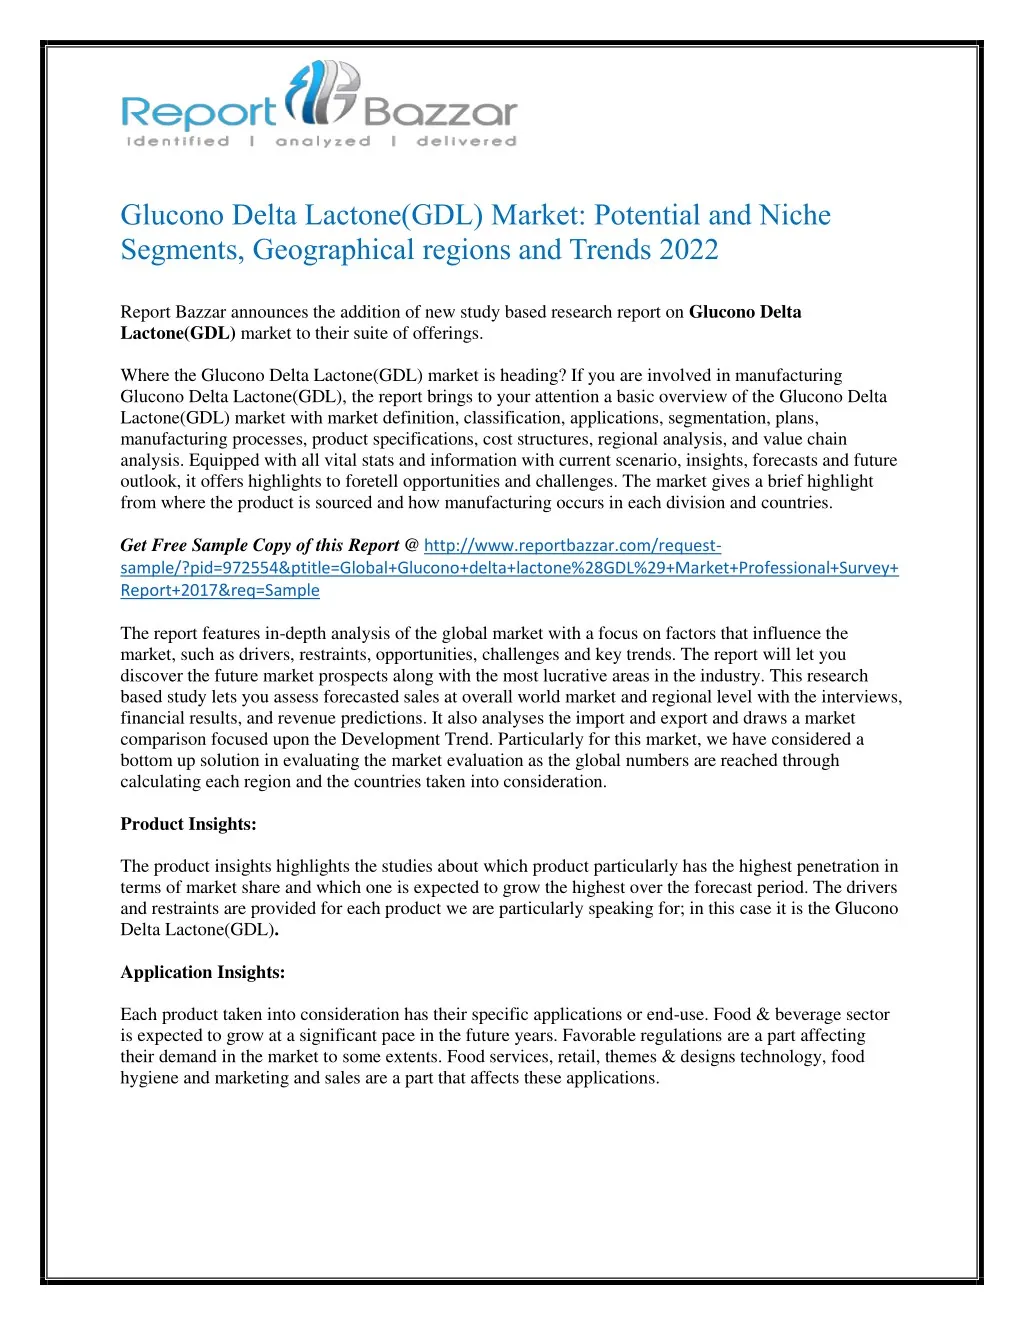 glucono delta lactone gdl market potential